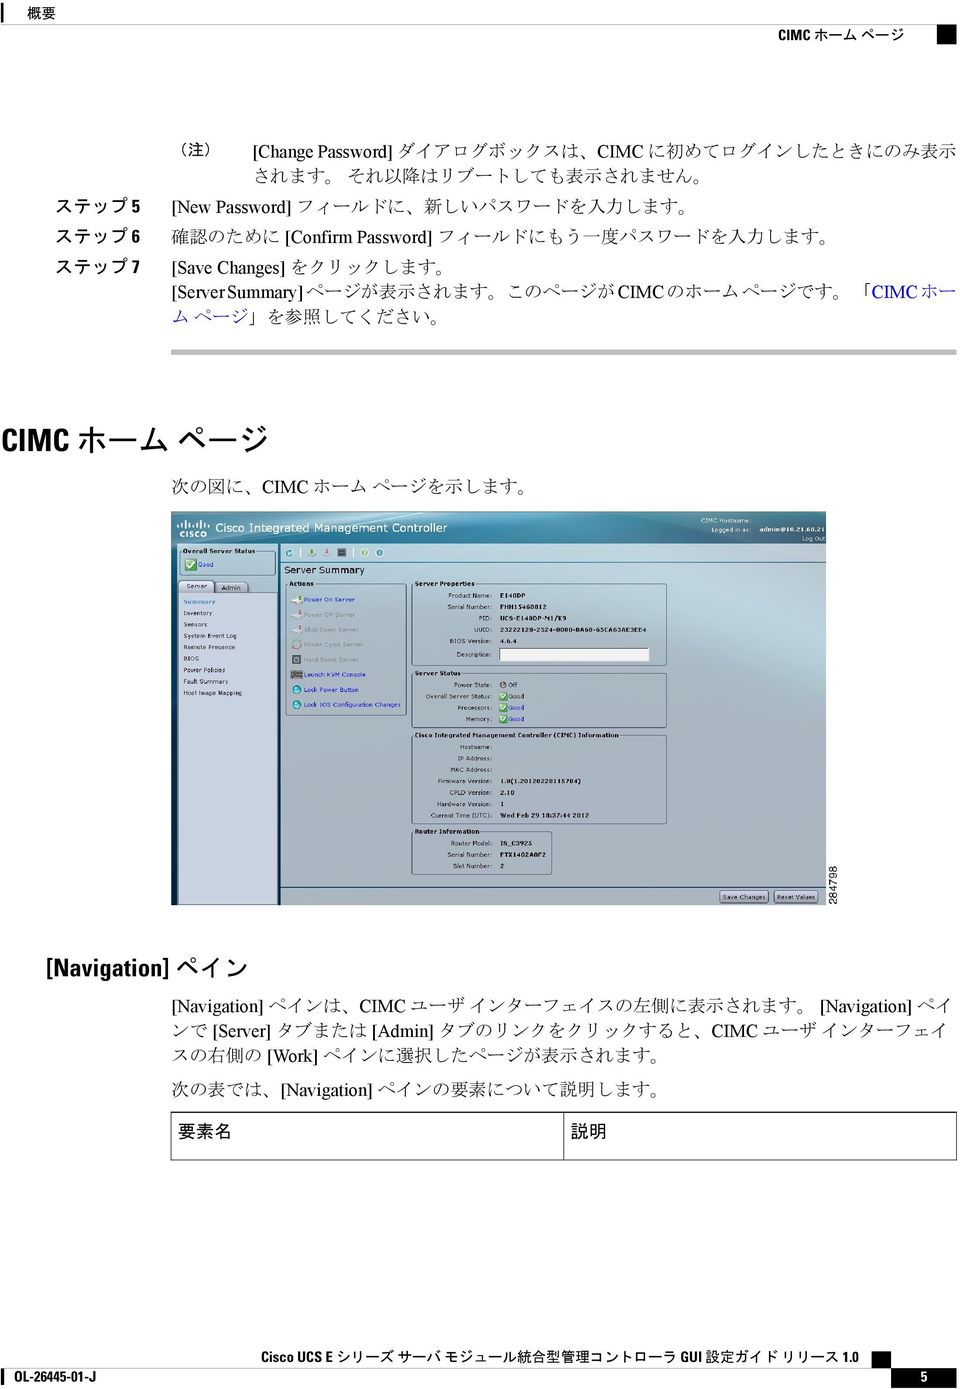 ホー ム ページ を 参 照 してください CIMC ホーム ページ 次 の 図 に CIMC ホーム ページを 示 します [Navigation] ペイン [Navigation] ペインは CIMC ユーザ インターフェイスの 左 側 に 表 示 されます [Navigation] ペイ ンで